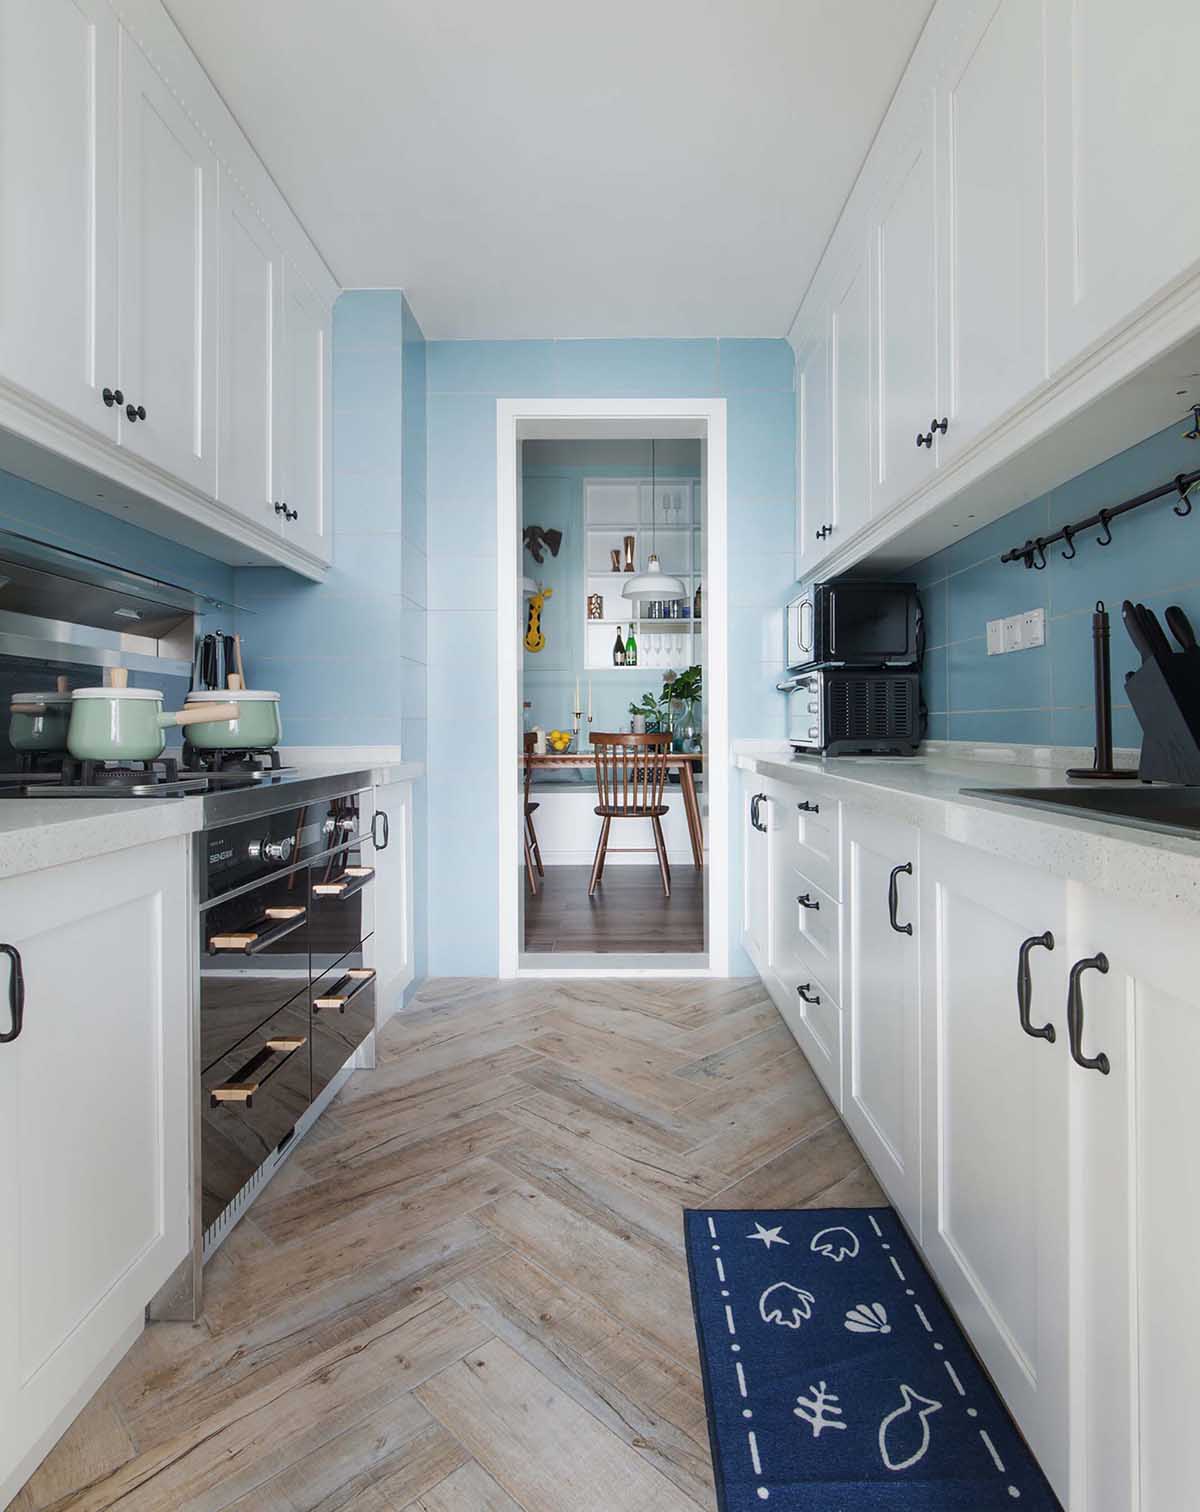 Mẫu tủ bếp song song kết hợp giữa màu xám và gam màu trắng tinh tế là sự lựa chọn hoàn hảo cho những người thích không gian nhẹ nhàng, trang nhã.